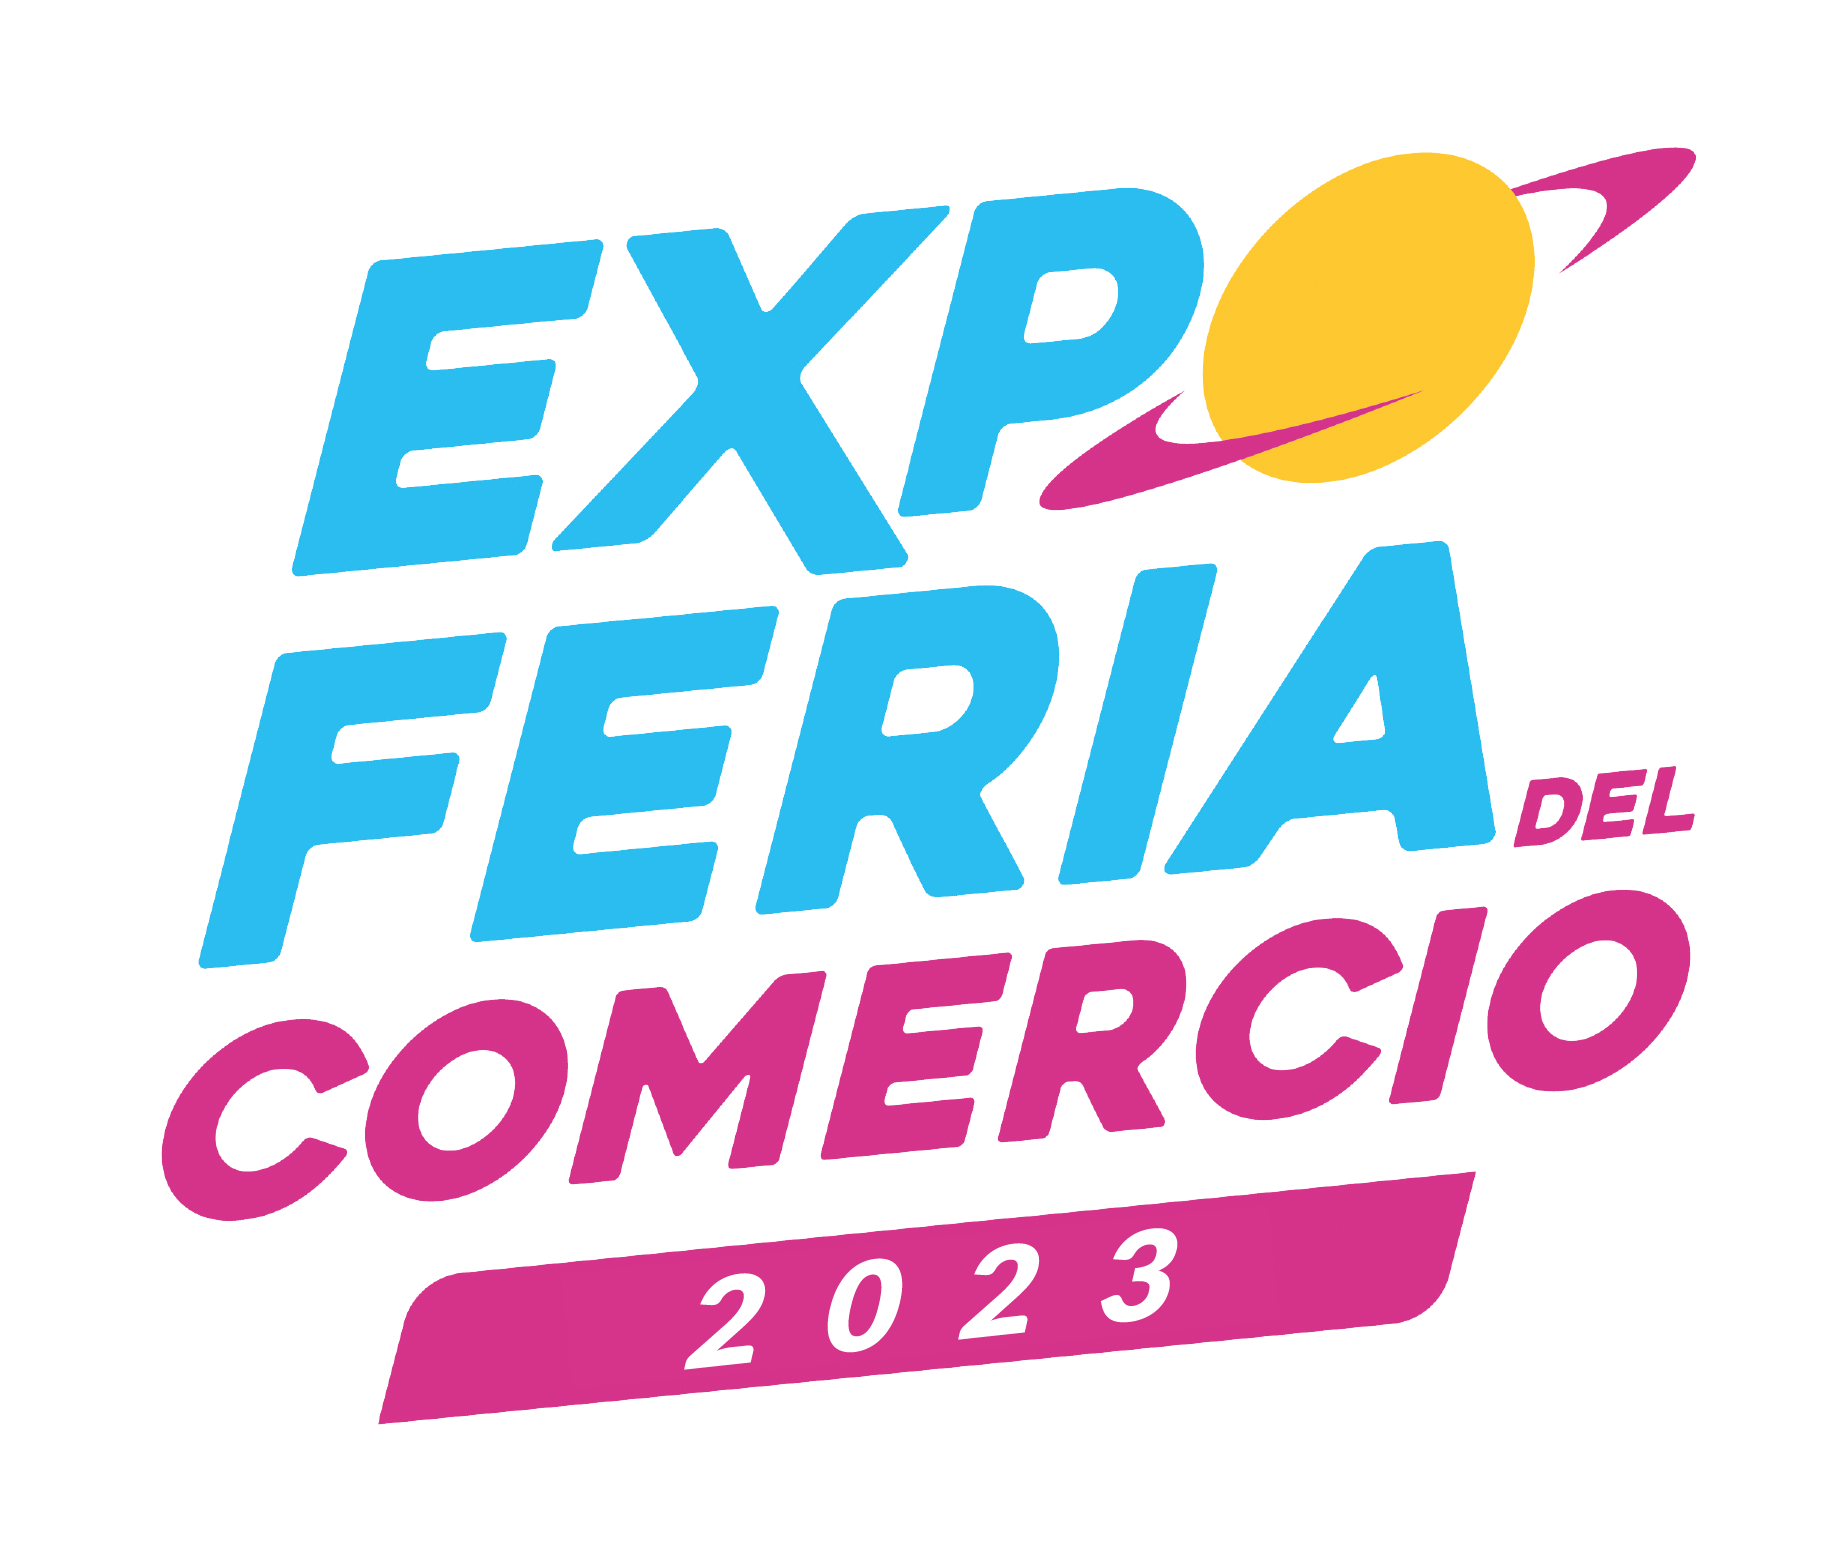 EXPO-COMERCIO-2023-logo-1